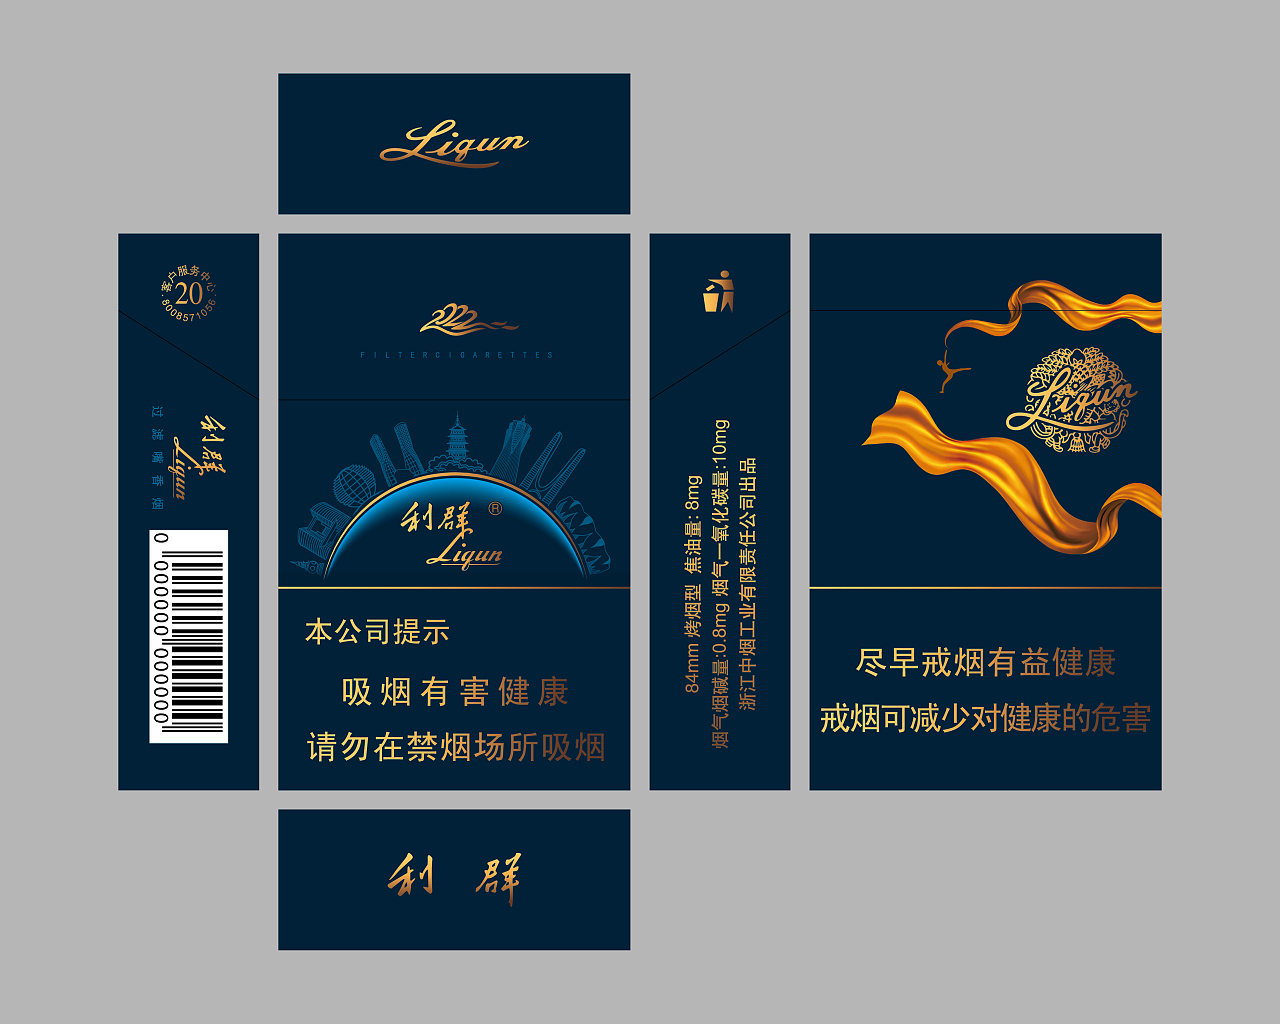 Liqun's new cigarette label design